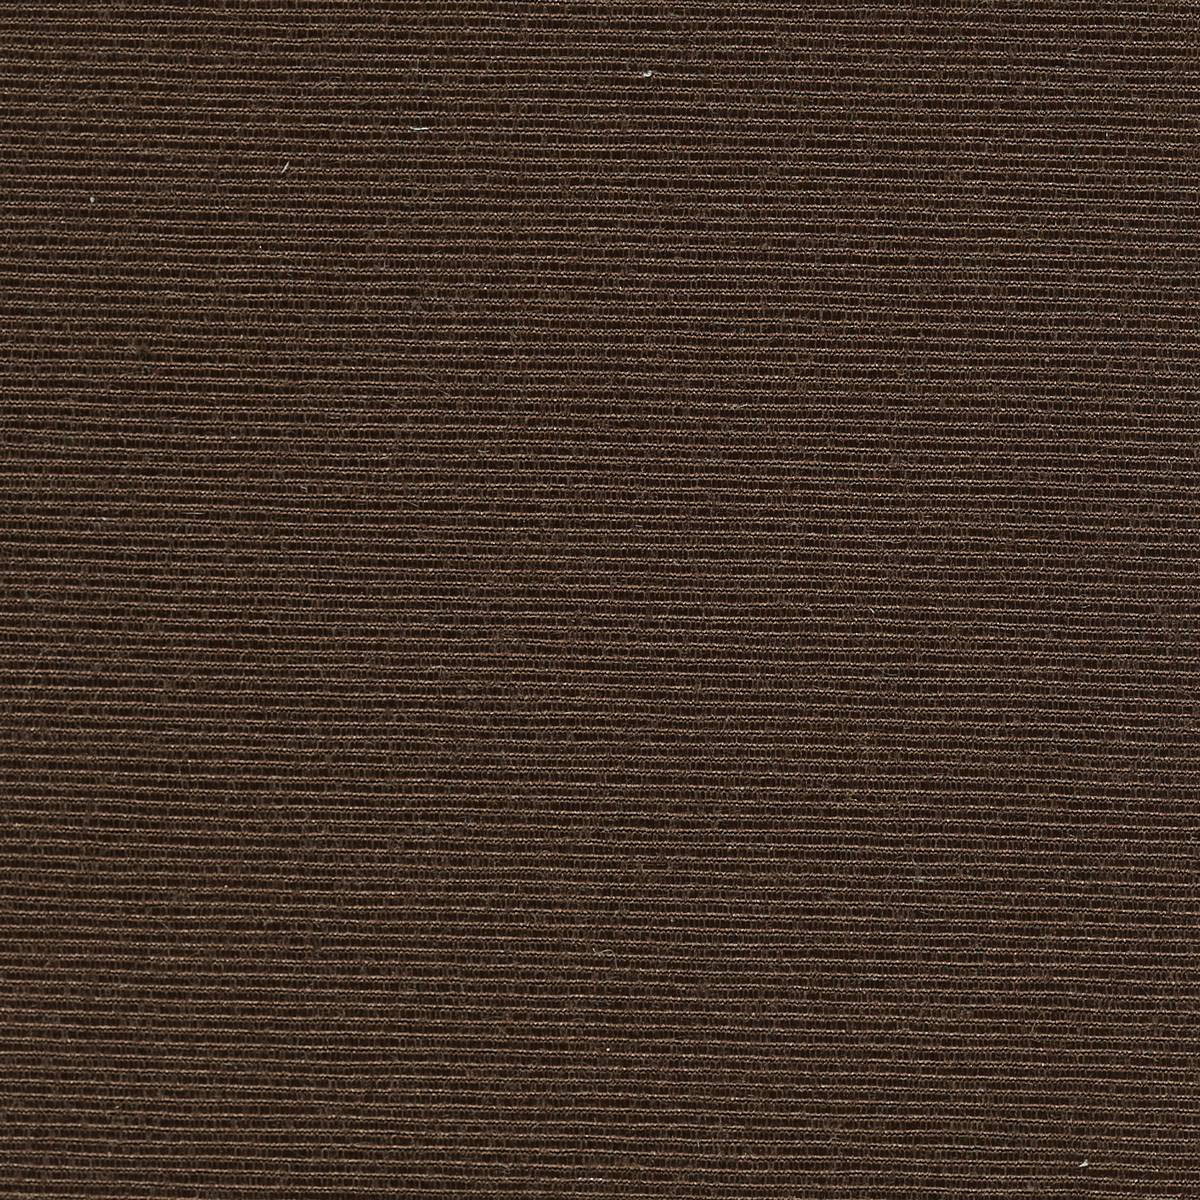 Optix Chesnut Fabric by Harlequin